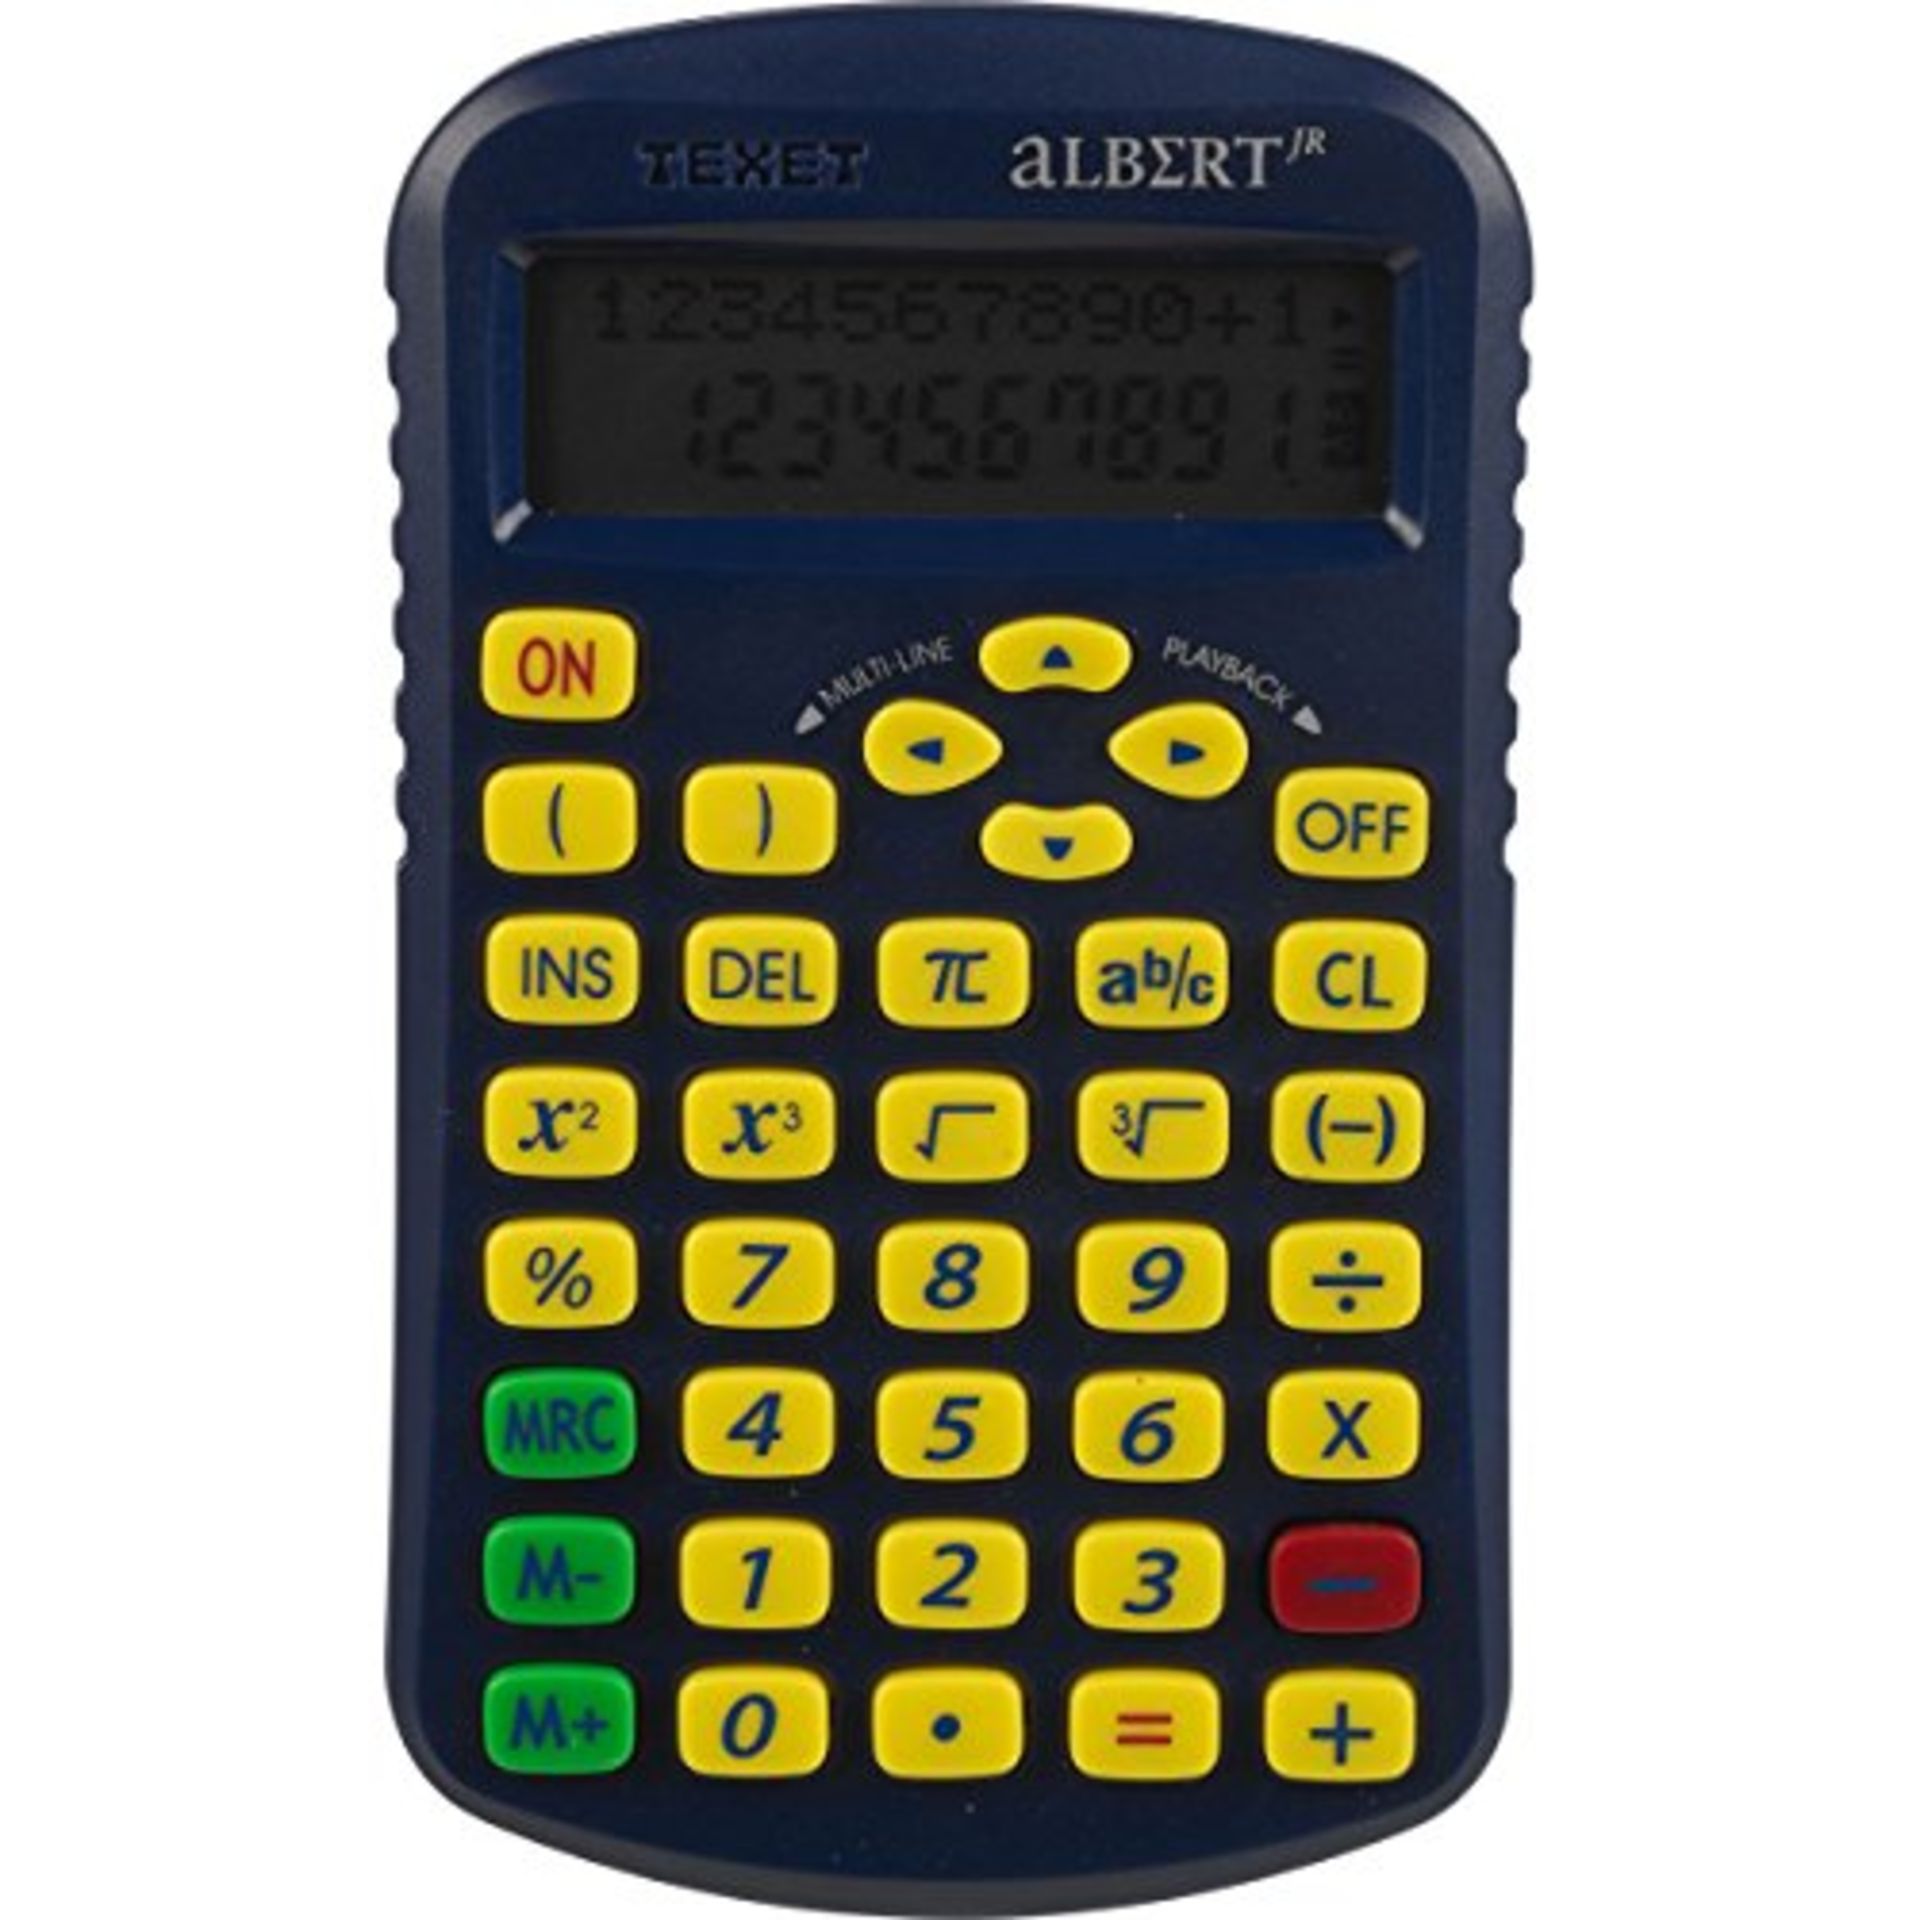 V Brand New A Lot Of Four Texet Albert JR Scientific Calculators